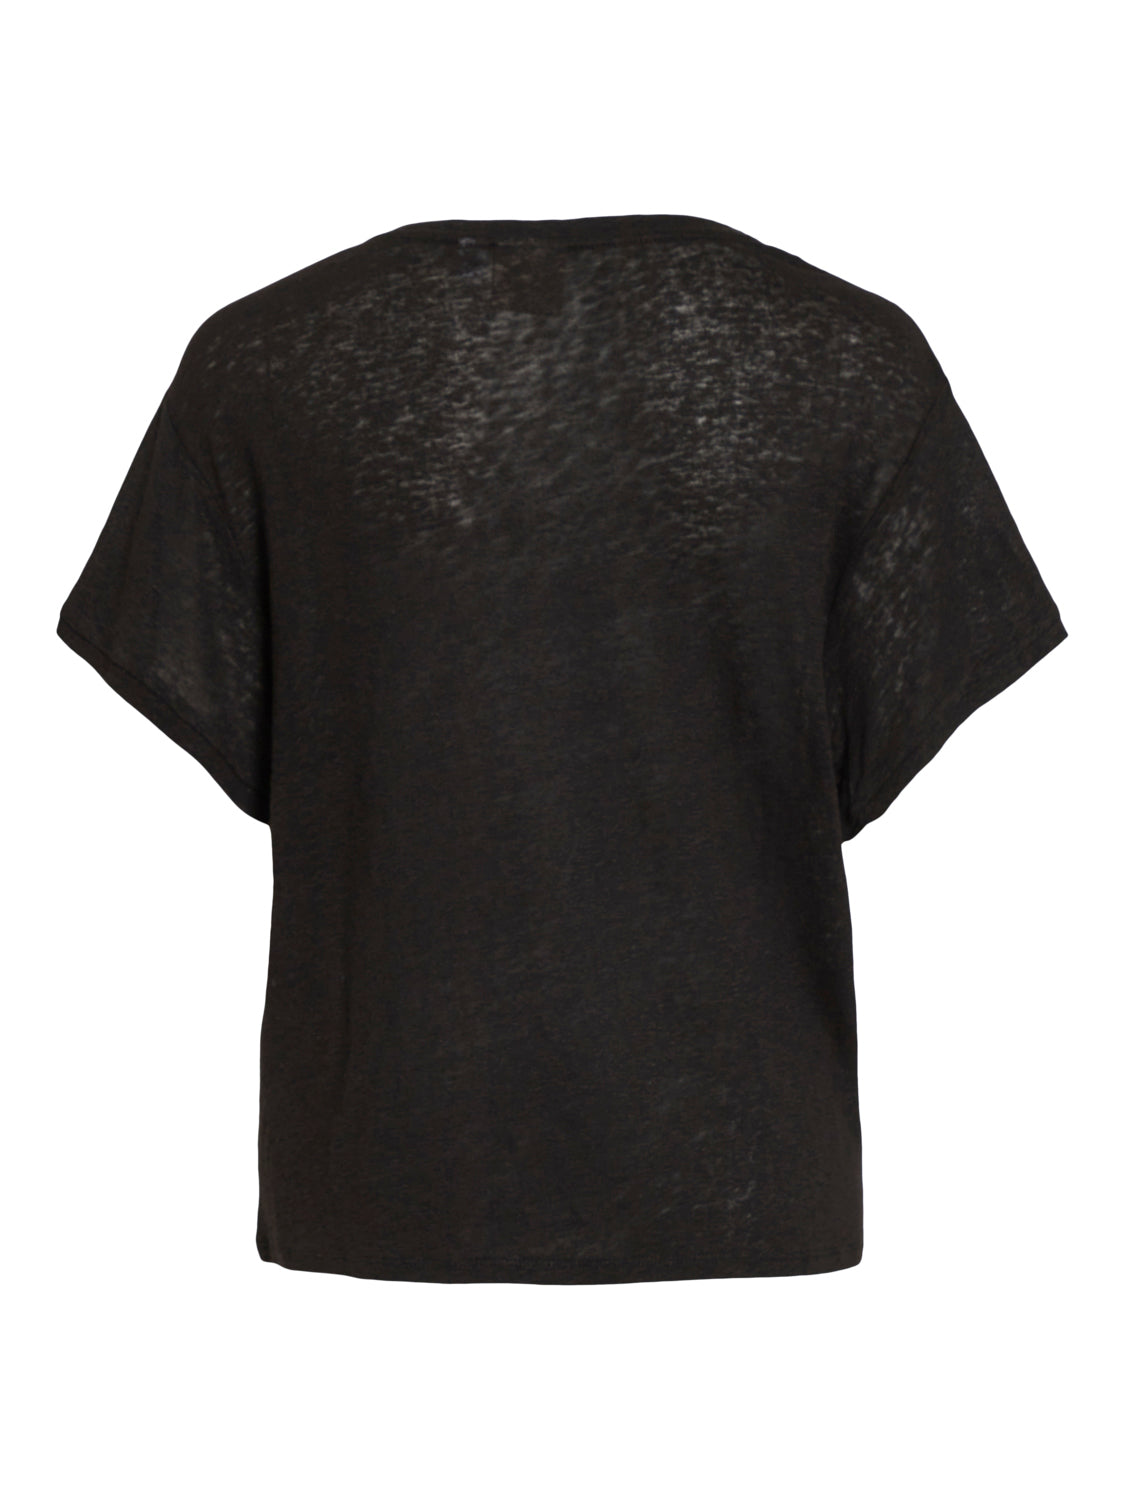 VIHOLLY T-Shirt - Black